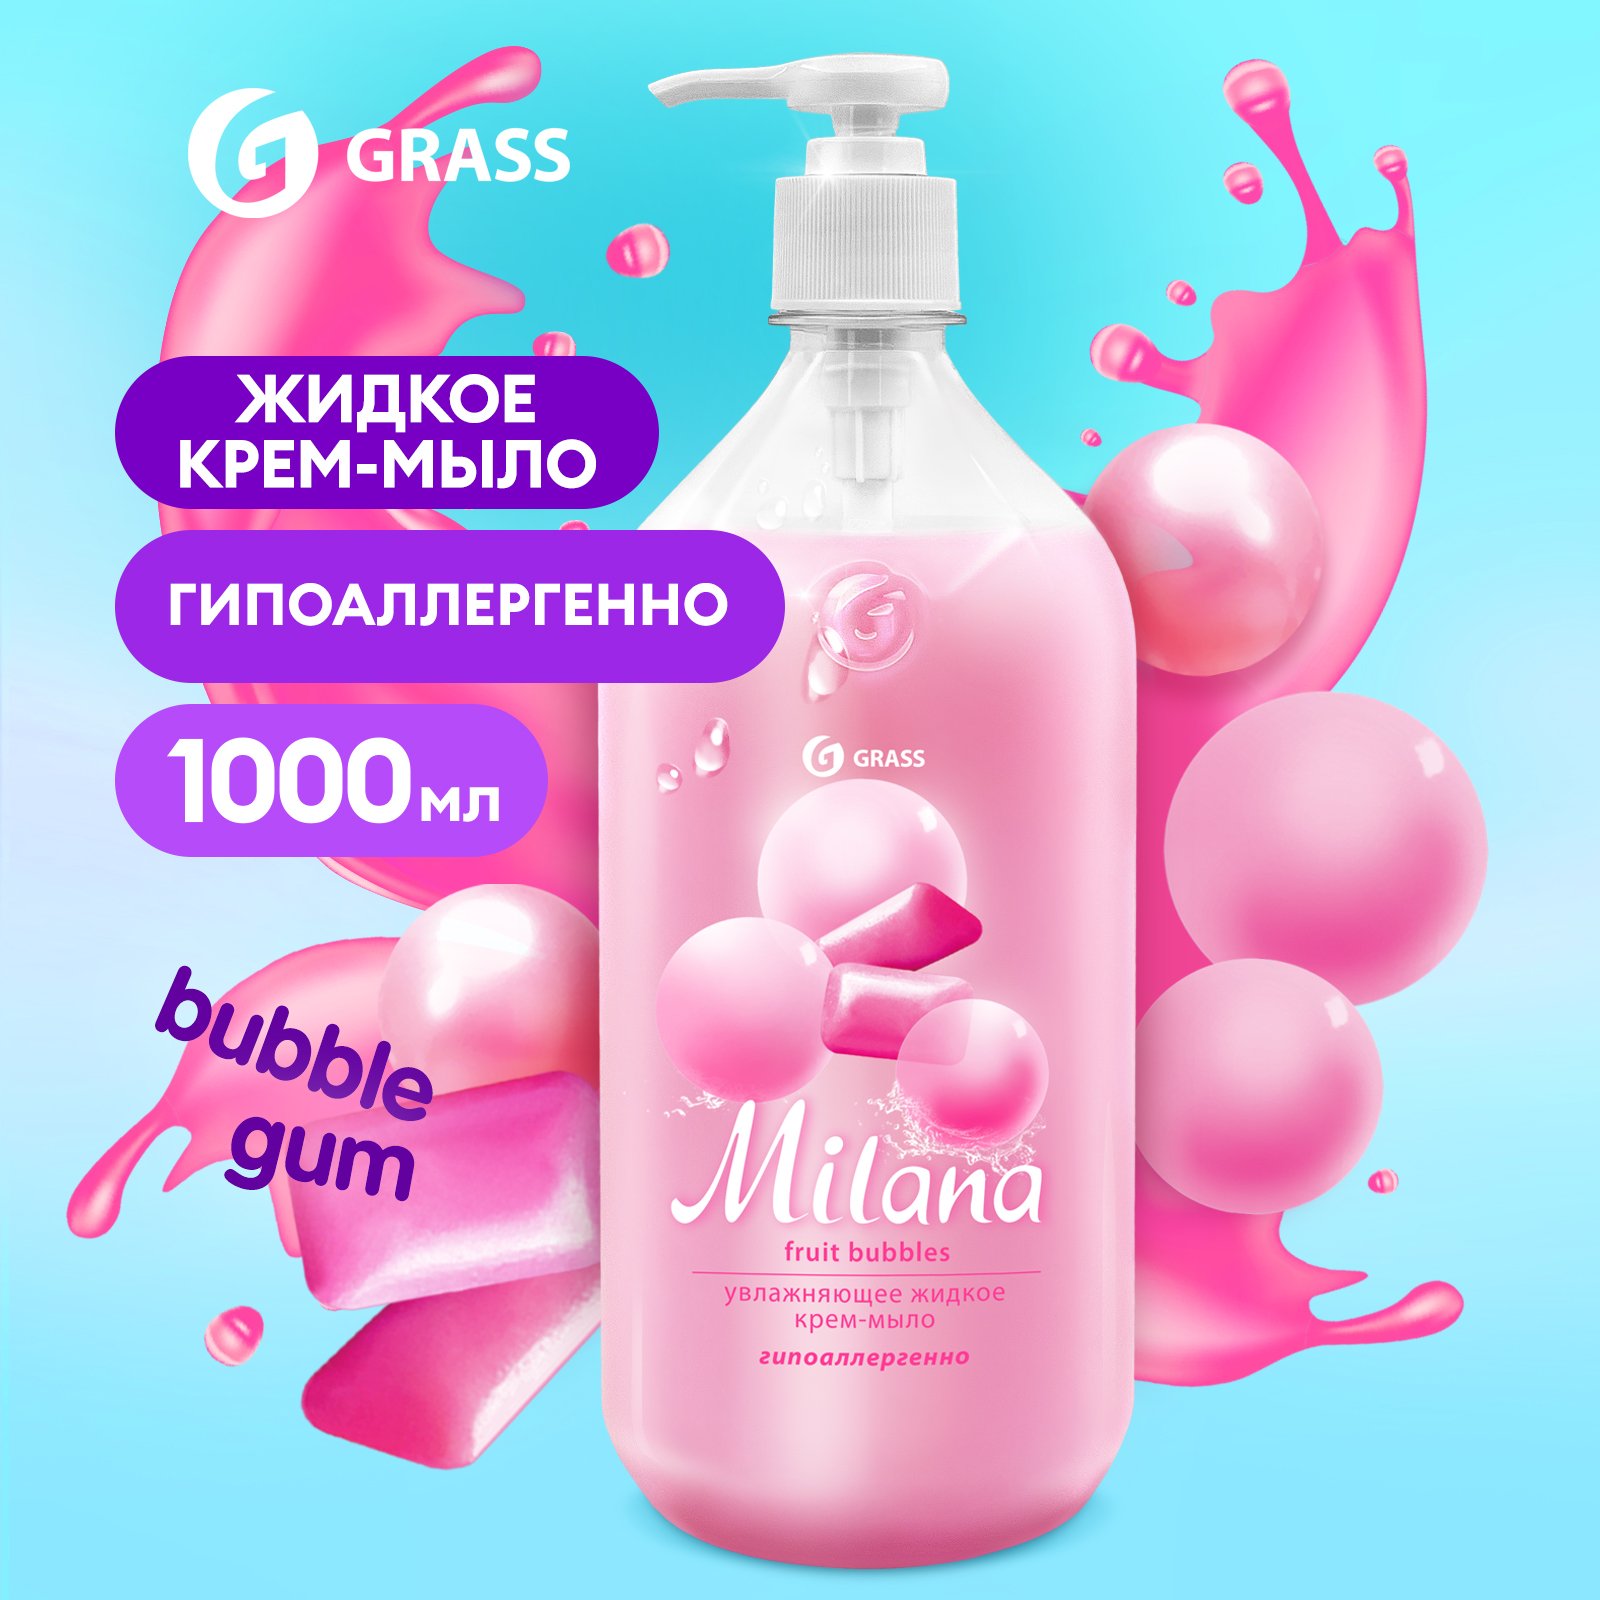 Мыло жидкое для рук Grass Milana Fruit Bubbles туалетное, густое, гипоаллергенное 1 л мыло жидкое для рук grass milana perfume парфюмированное с маслом хлопка 1л